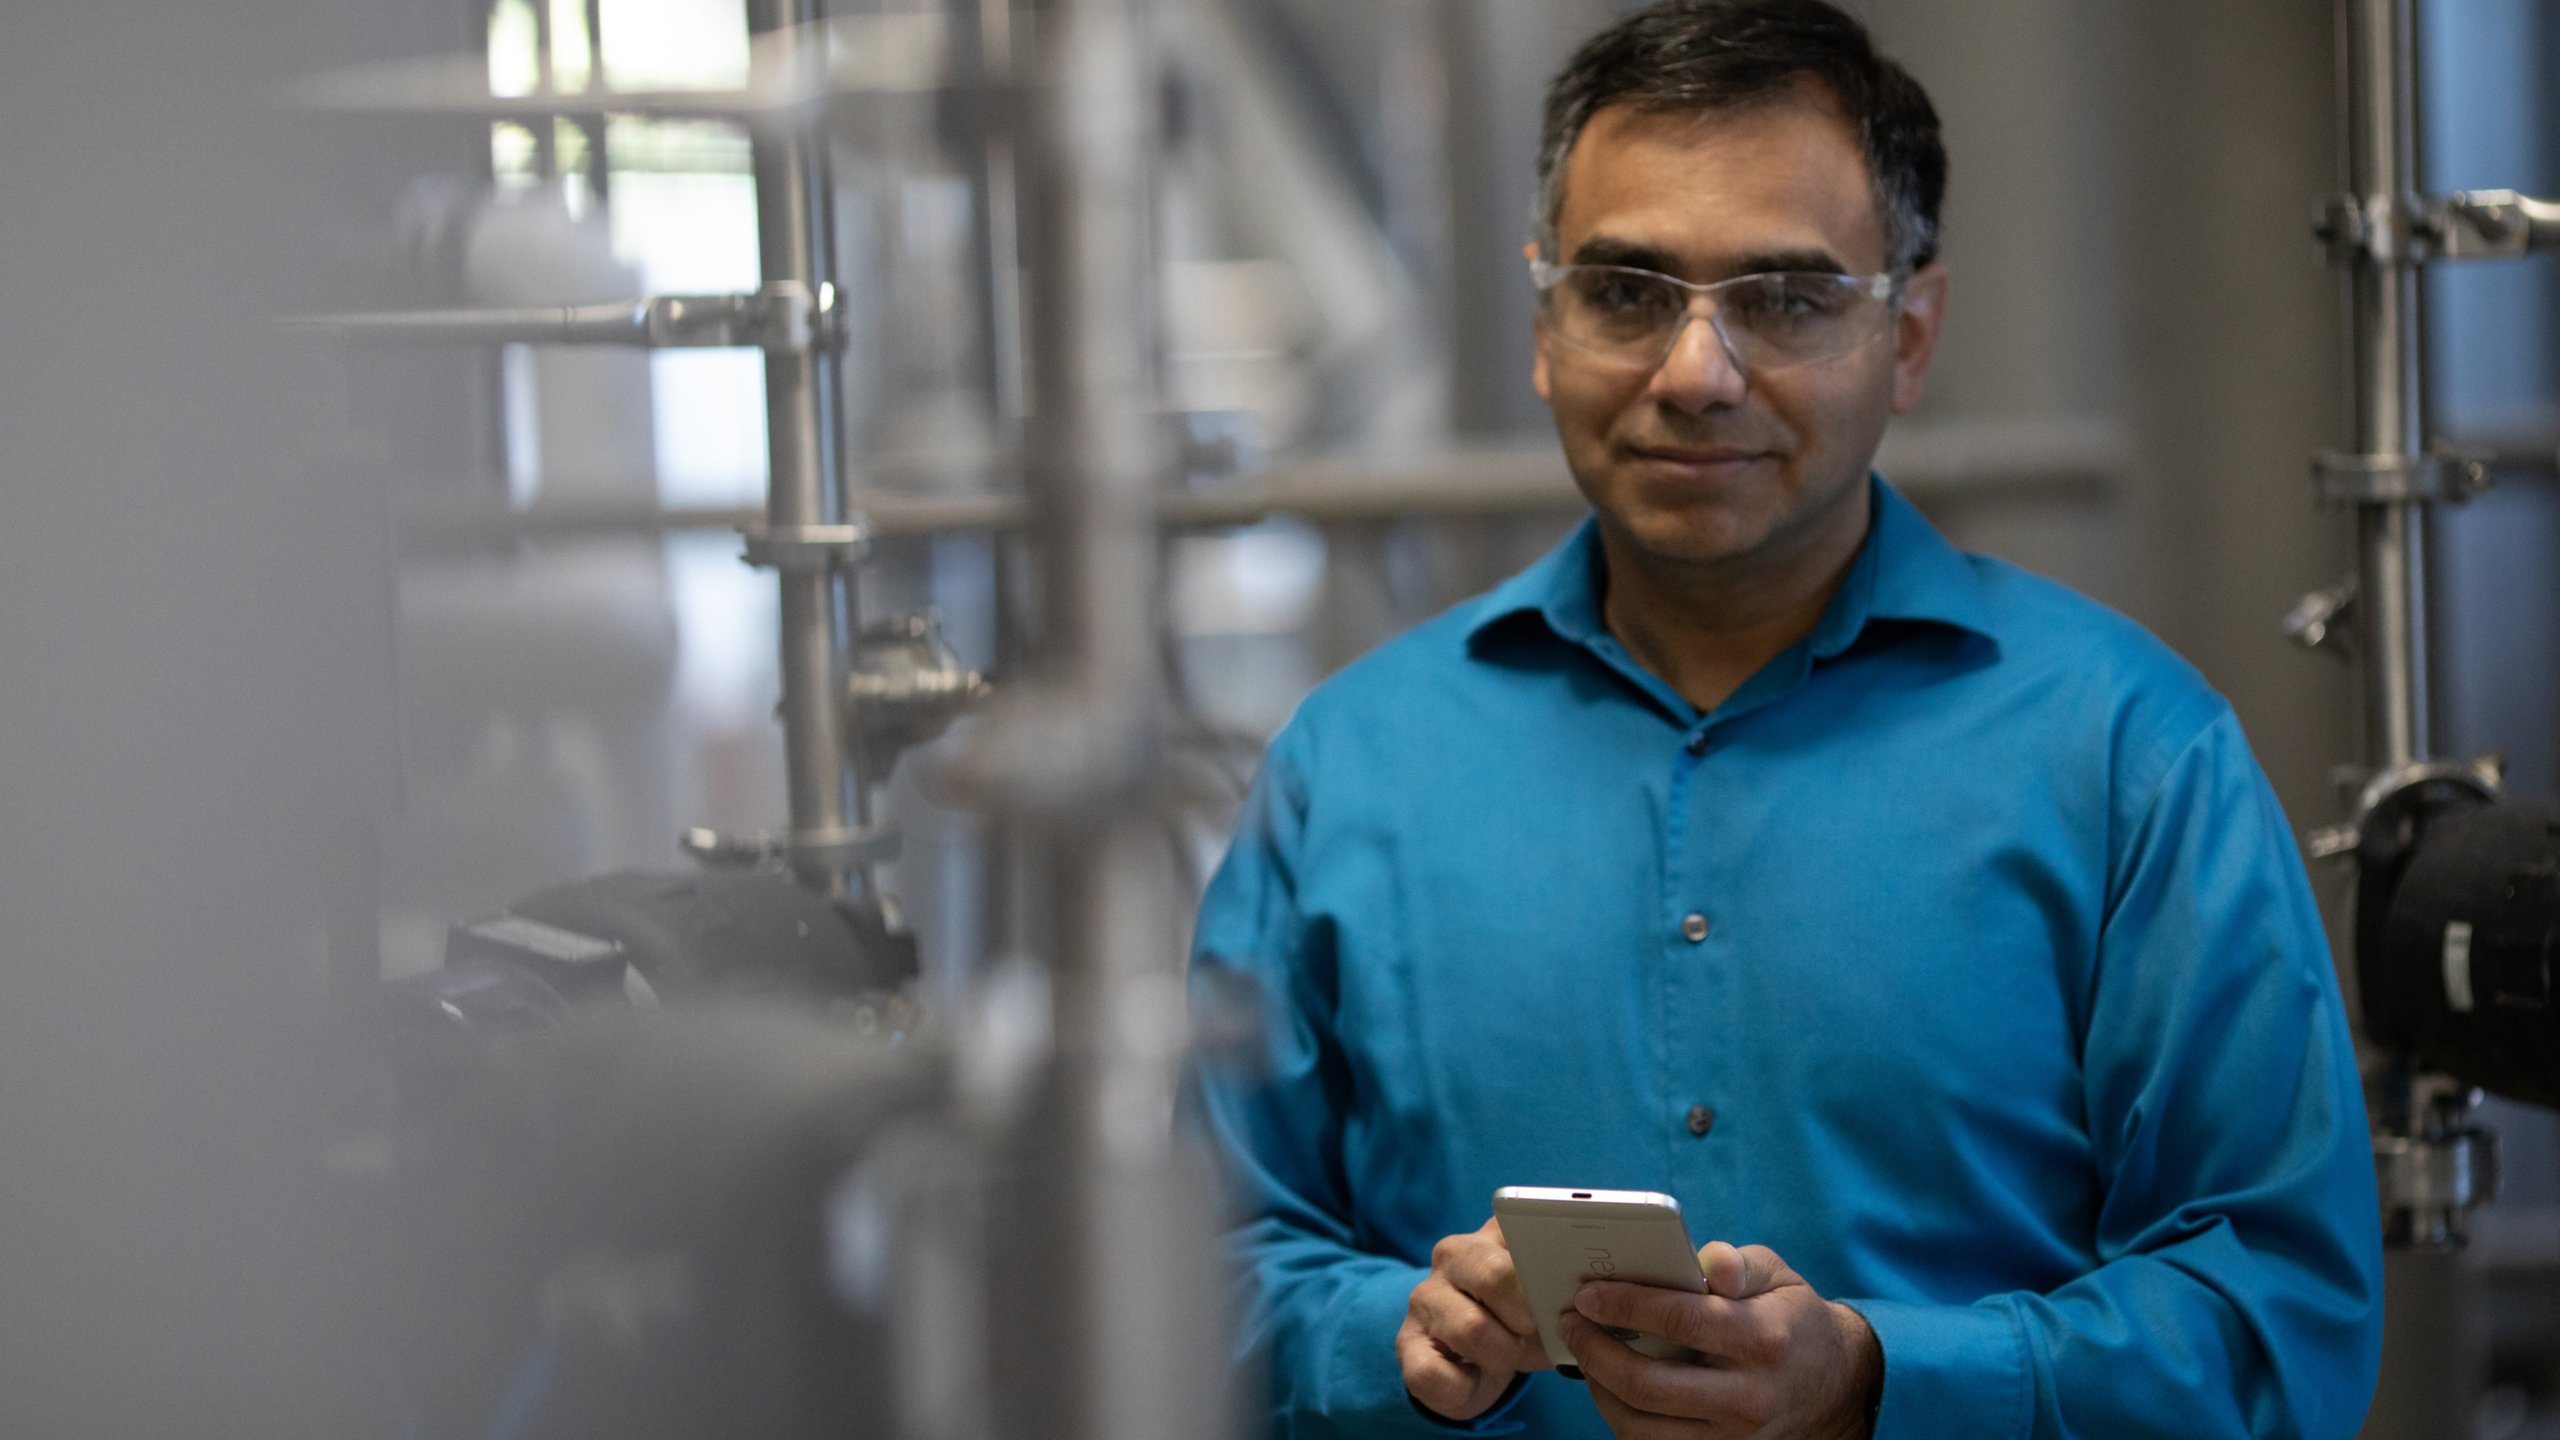 Un ingeniero con camisa azul, lentes de seguridad y un teléfono móvil observando al frente en una fábrica